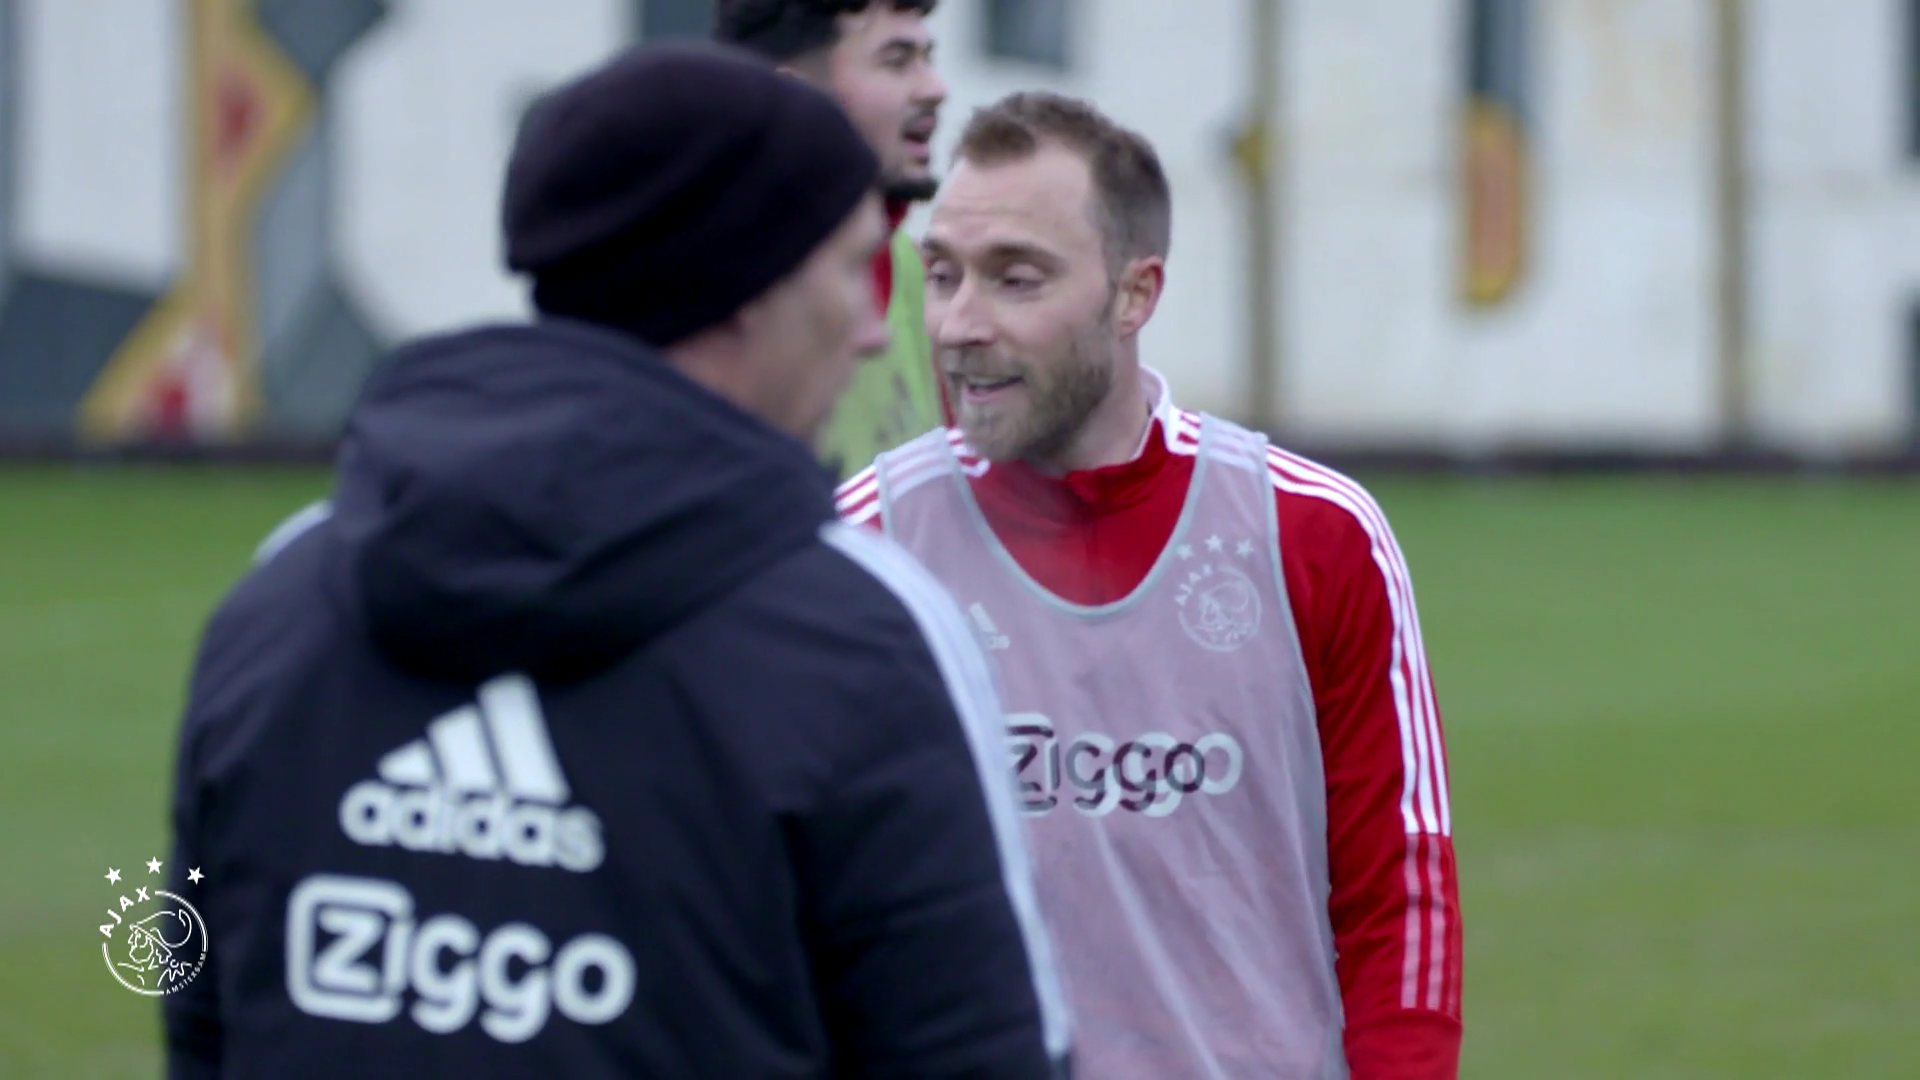 VIDEO: Momen Christian Eriksen saat Berlatih dengan Ajax Amsterdam